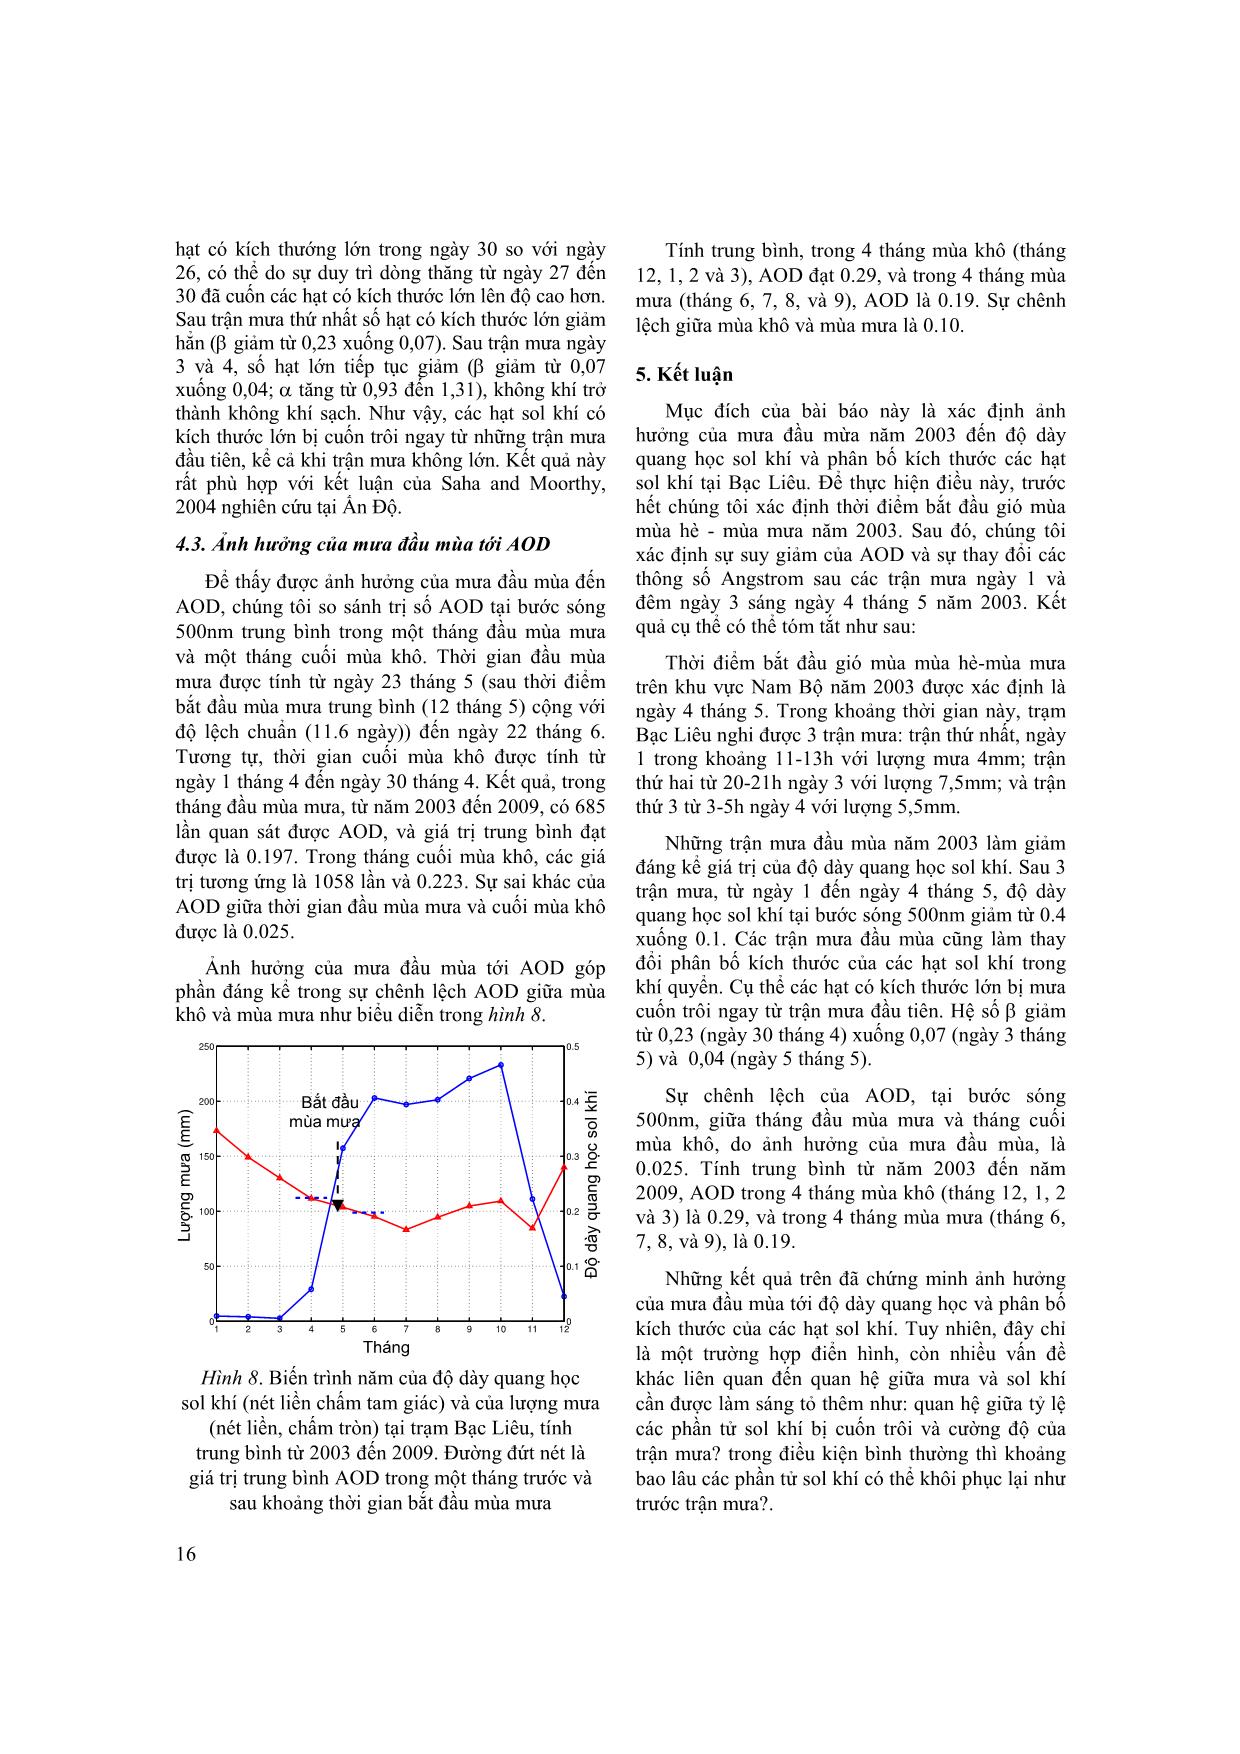 Ảnh hưởng của mưa đầu mùa tới độ dày quang học Sol khí tại Bạc Liêu trang 7